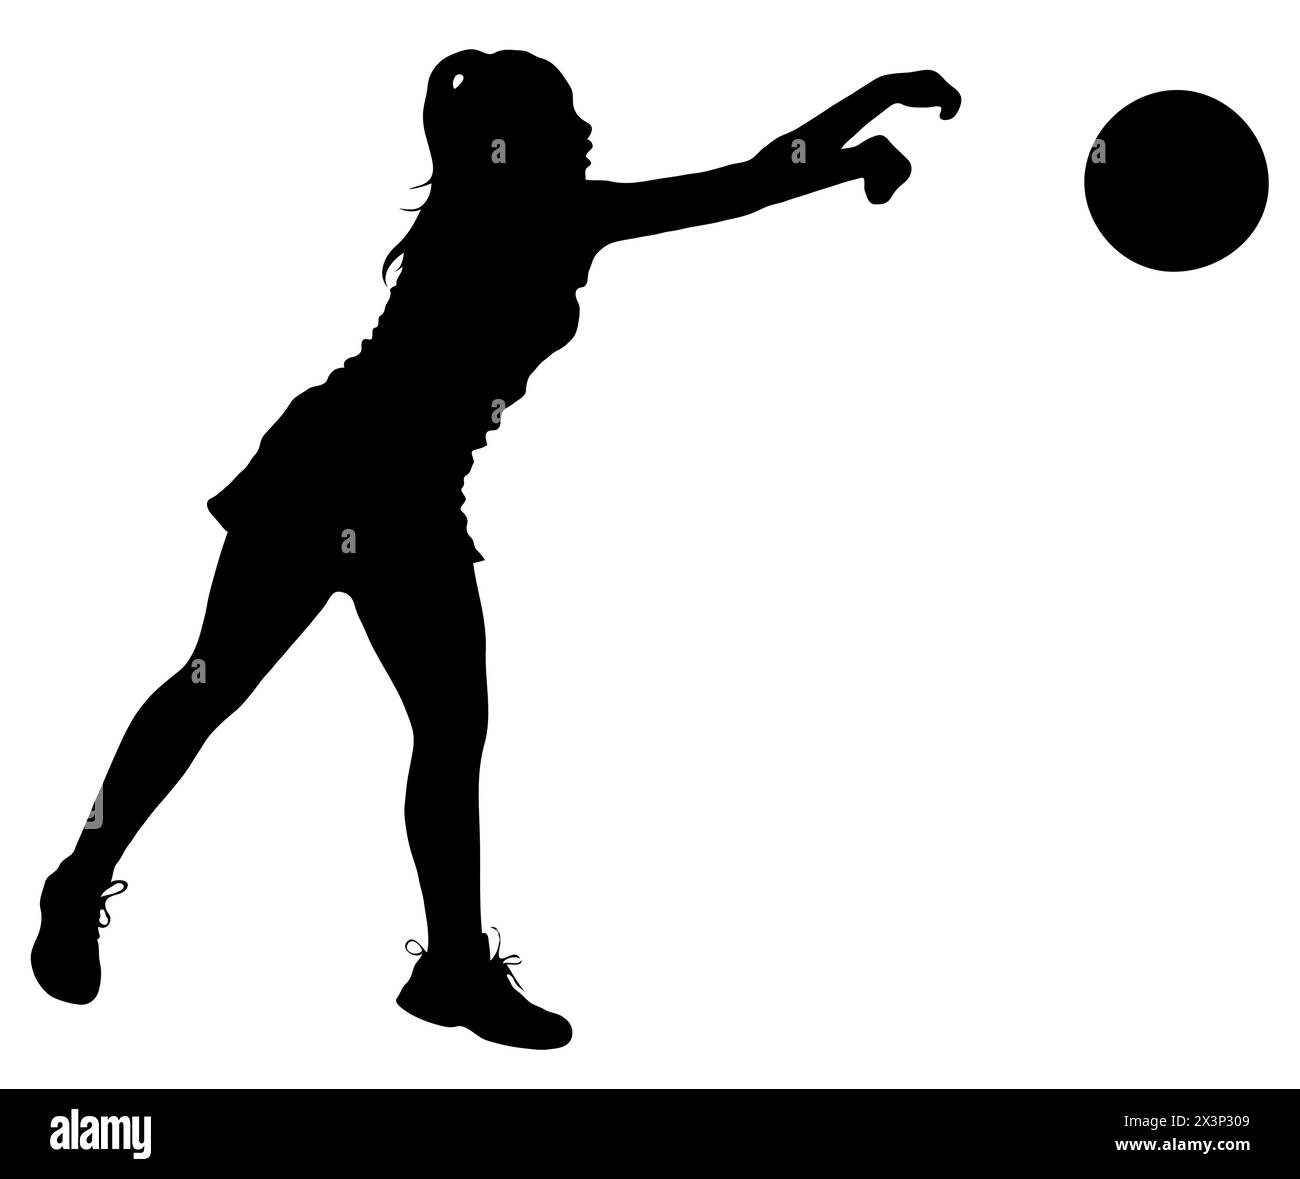 Detaillierte Sport-Silhouette – Korfball Ladies League Girl Player oder Netball Throw Ball V2 Refined Stock Vektor